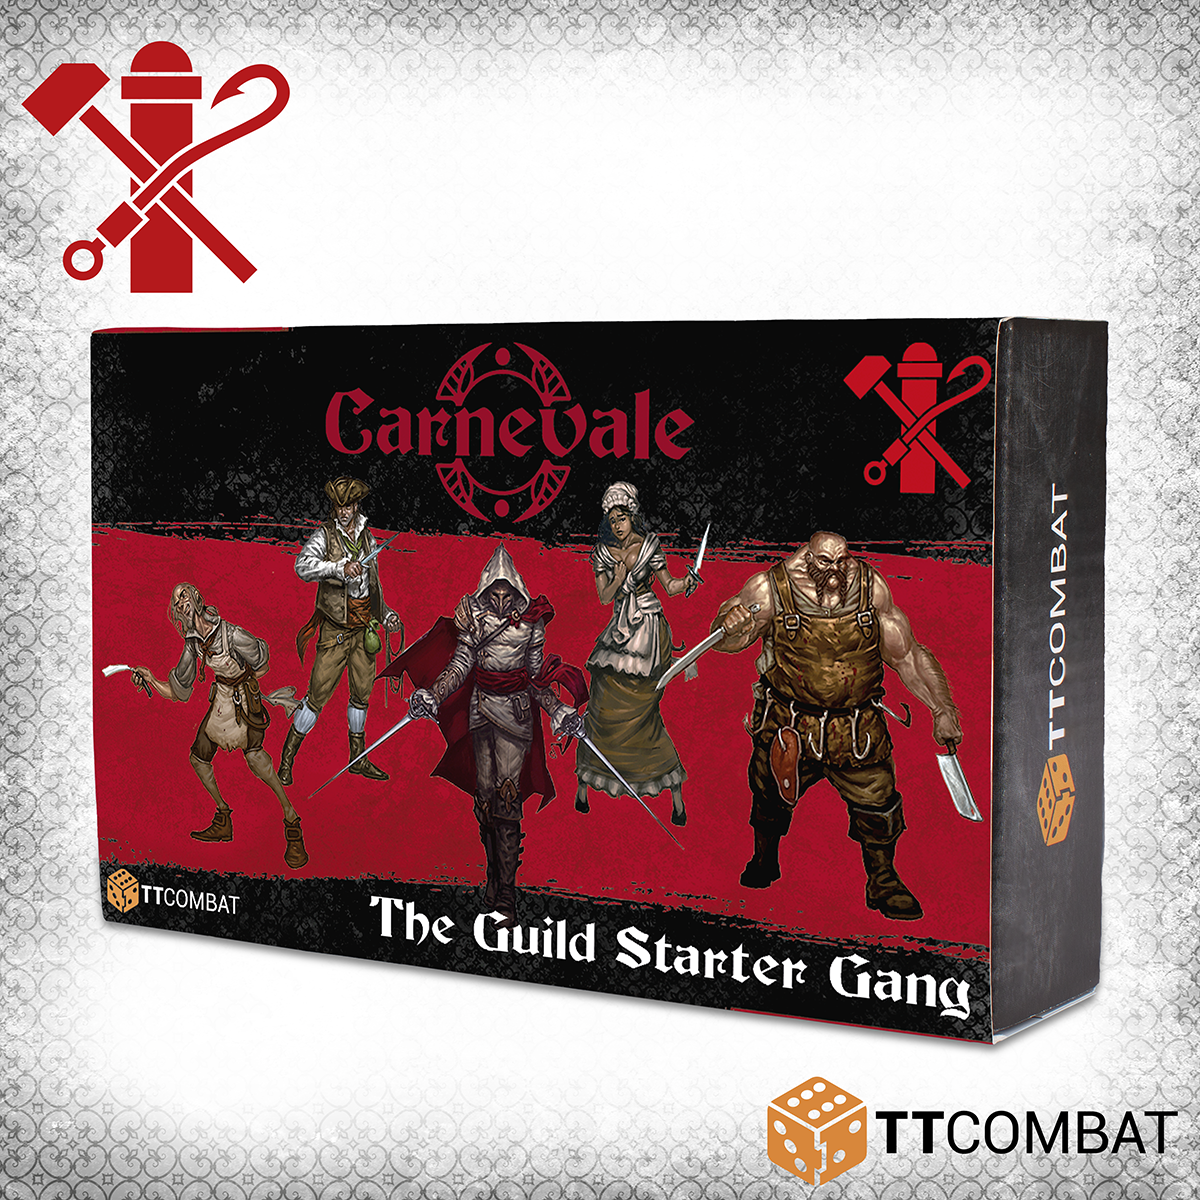 Box of The Guild Starter Gang